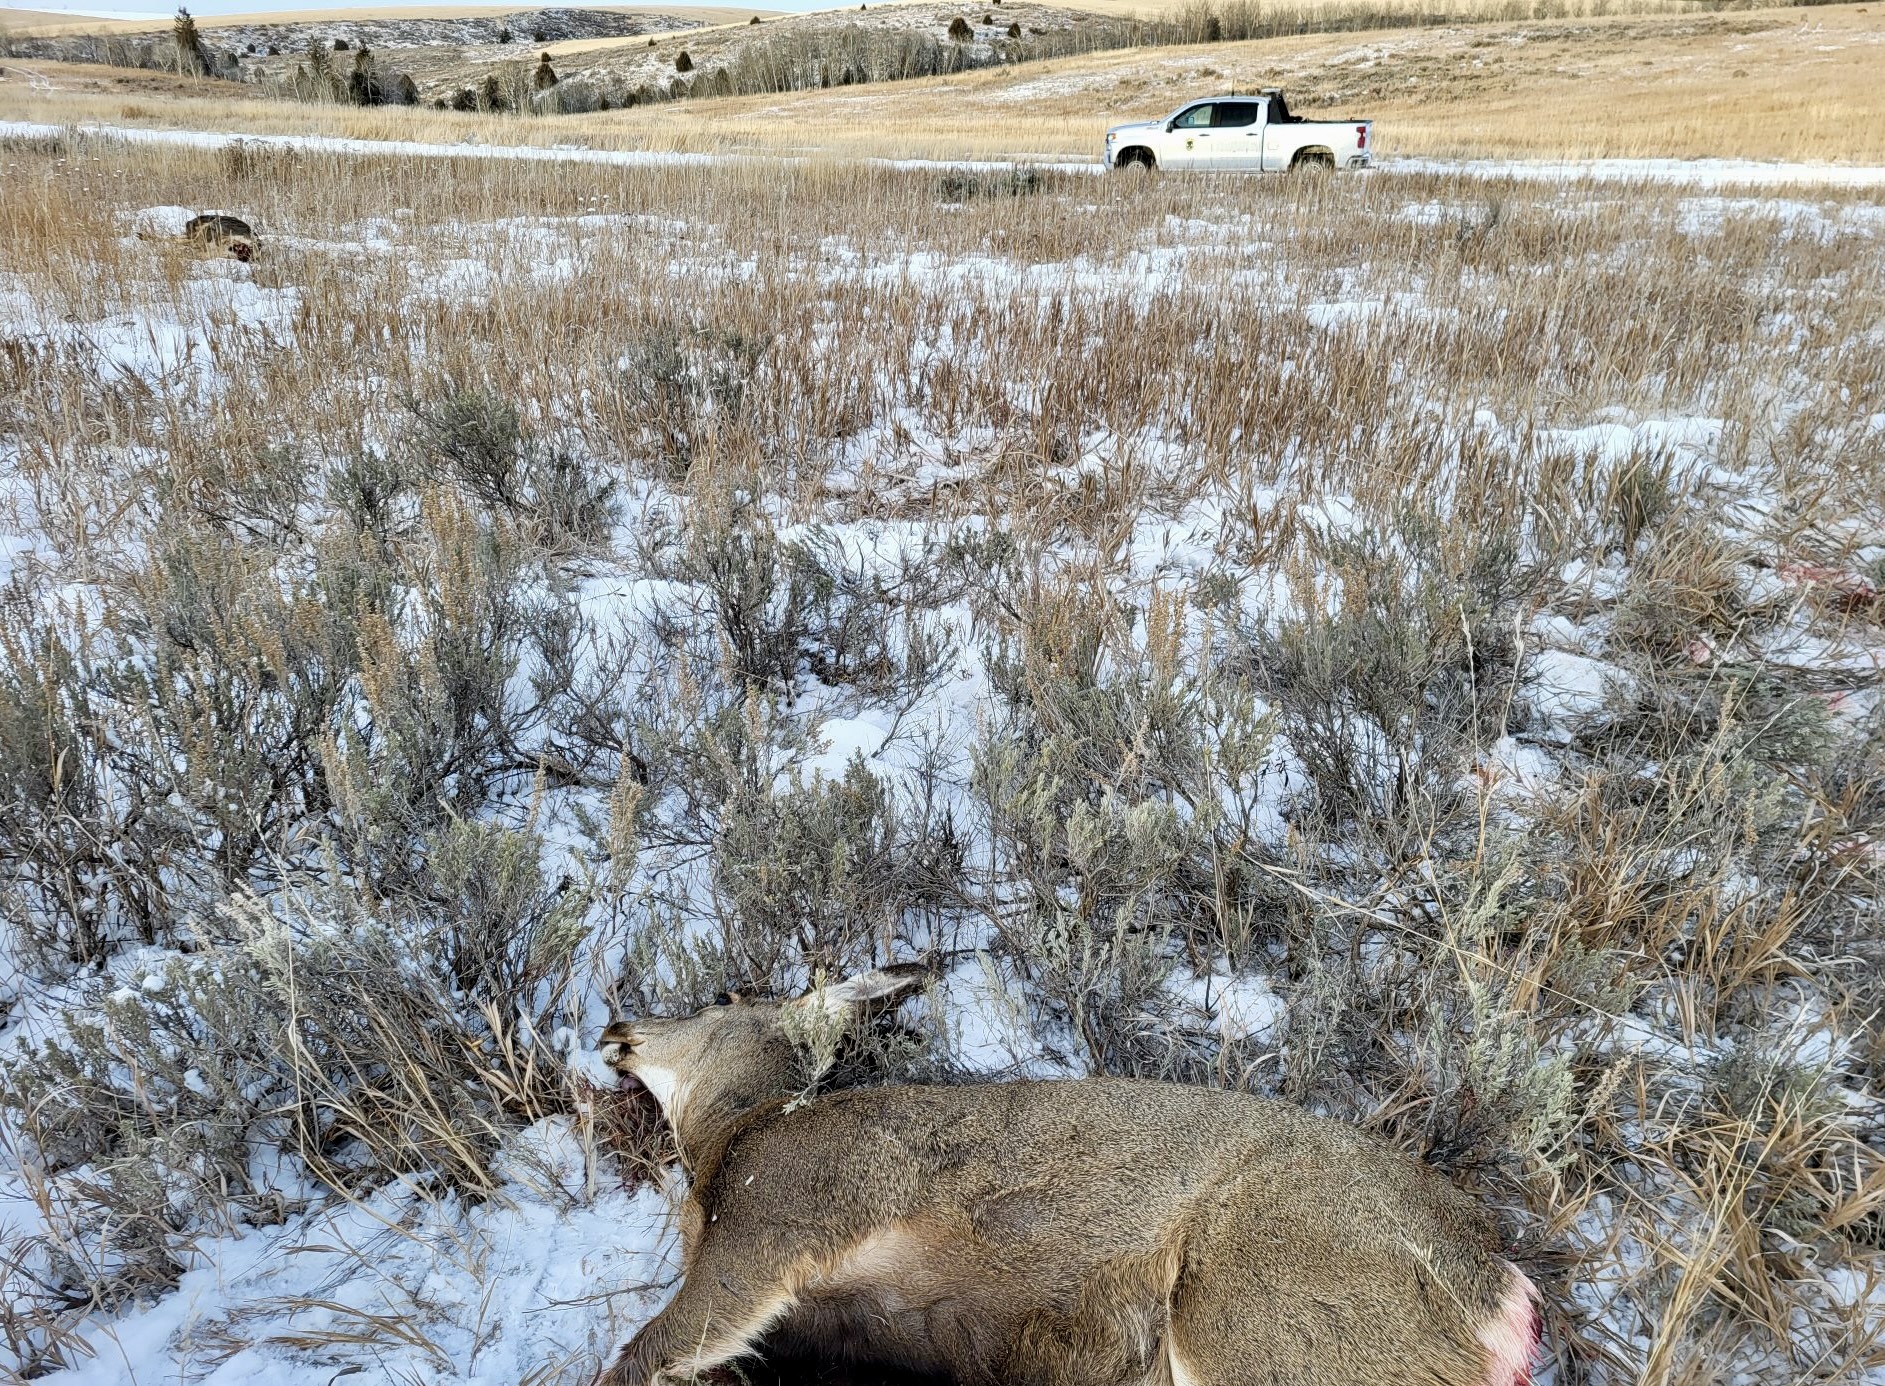 Deceased doe lying in a field